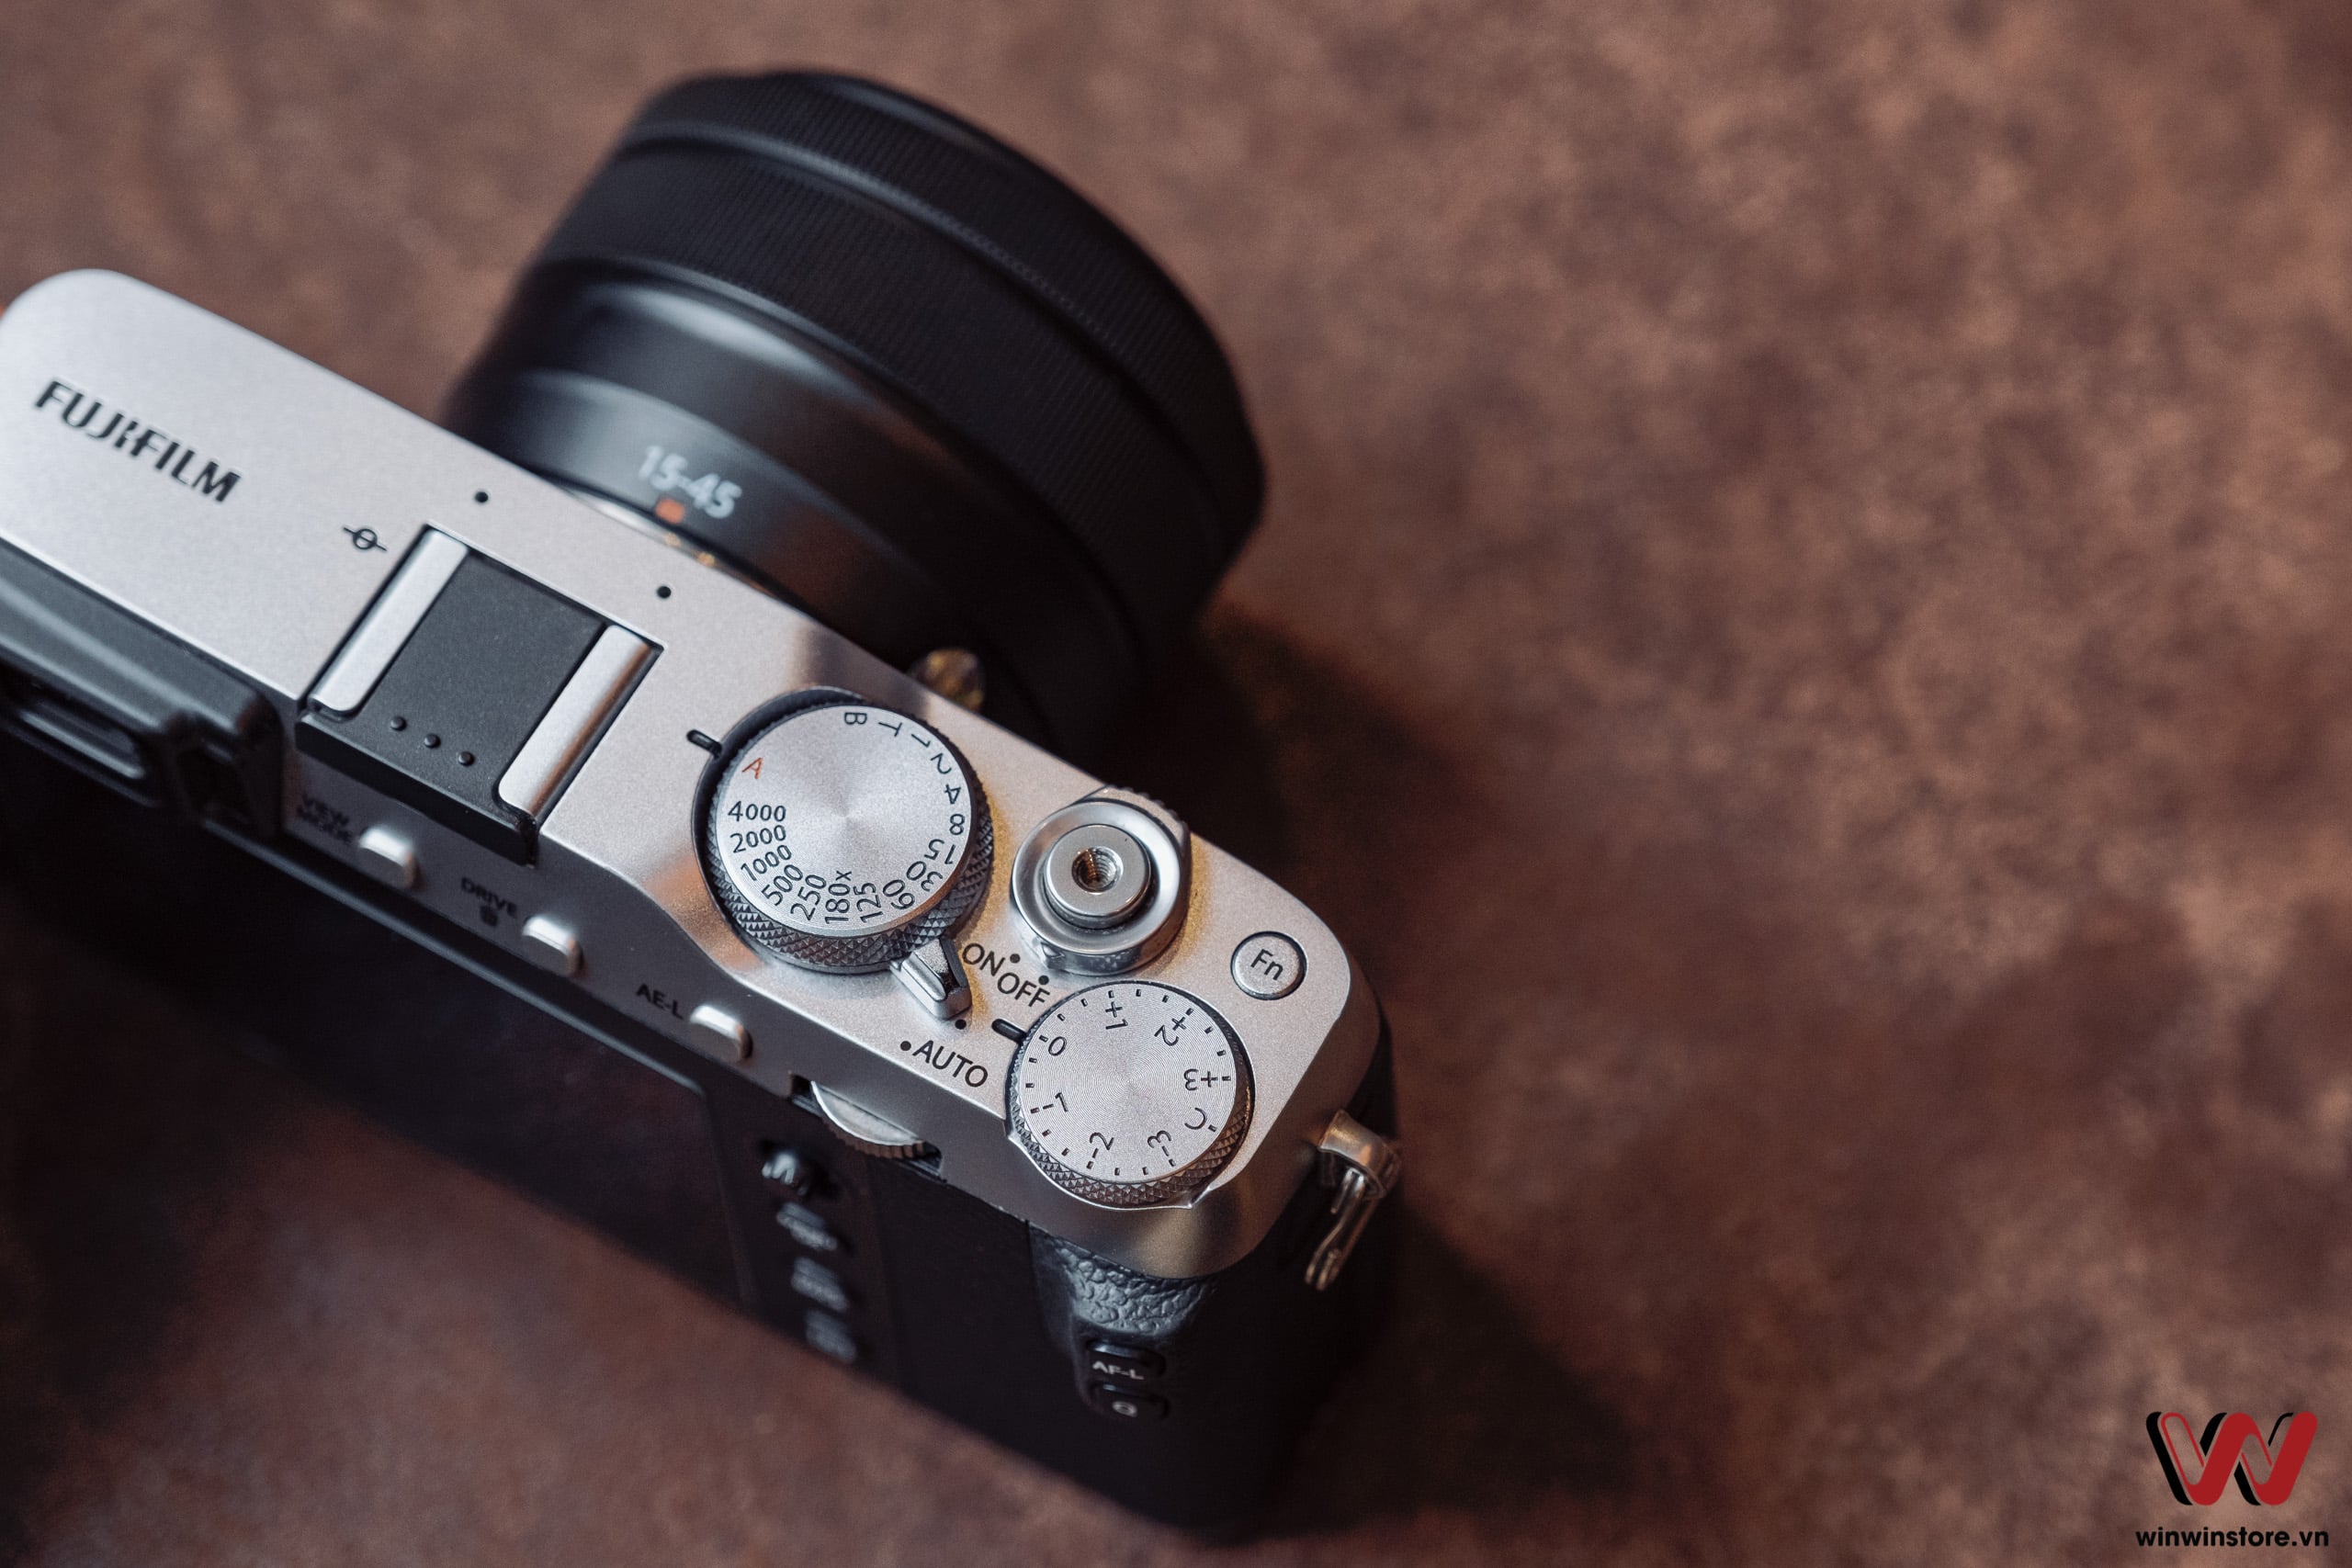 Máy ảnh Fujifilm X-E3 với ống kính XC 15-45mm (Silver)